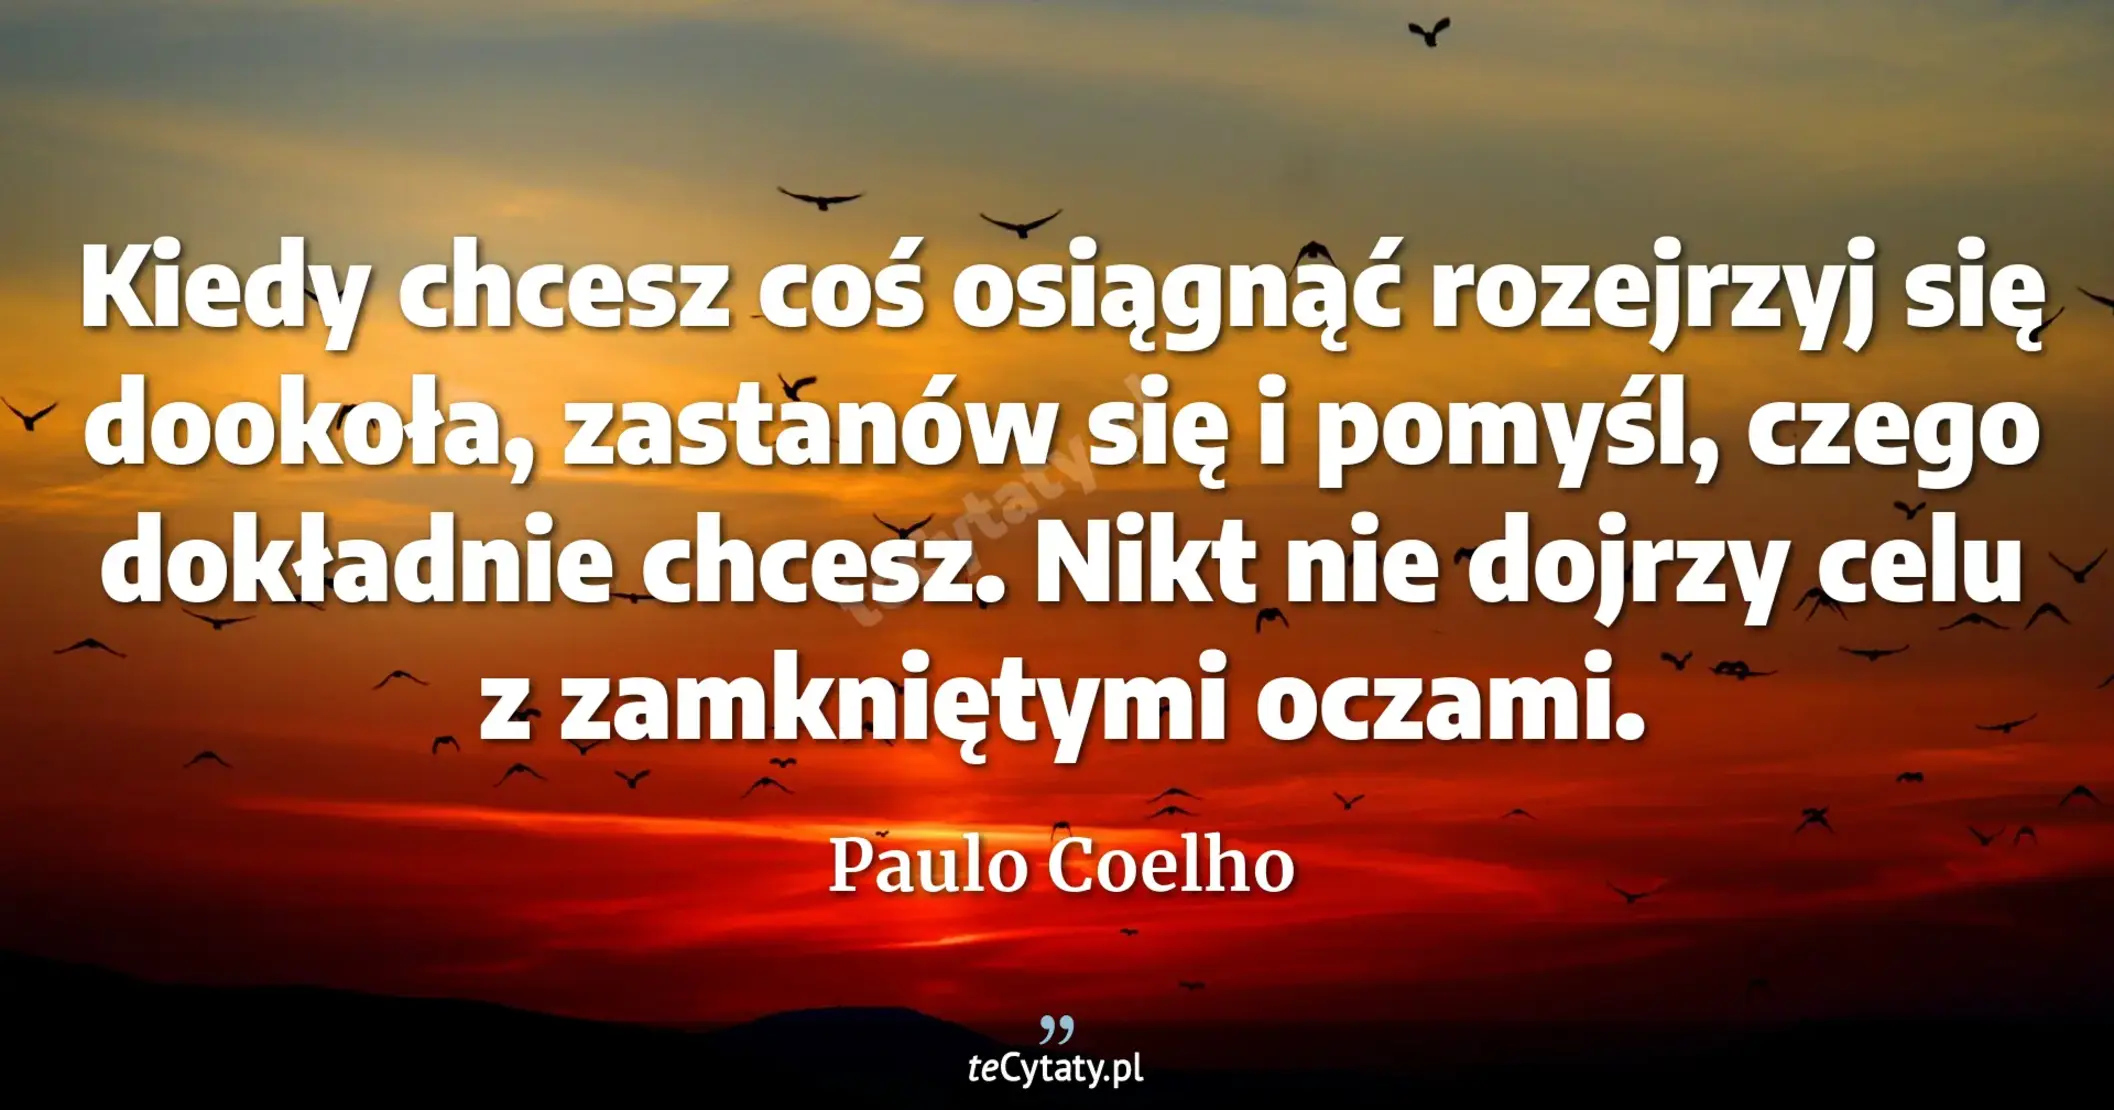 Kiedy chcesz coś osiągnąć rozejrzyj się dookoła, zastanów się i pomyśl, czego dokładnie chcesz. Nikt nie dojrzy celu z zamkniętymi oczami. - Paulo Coelho